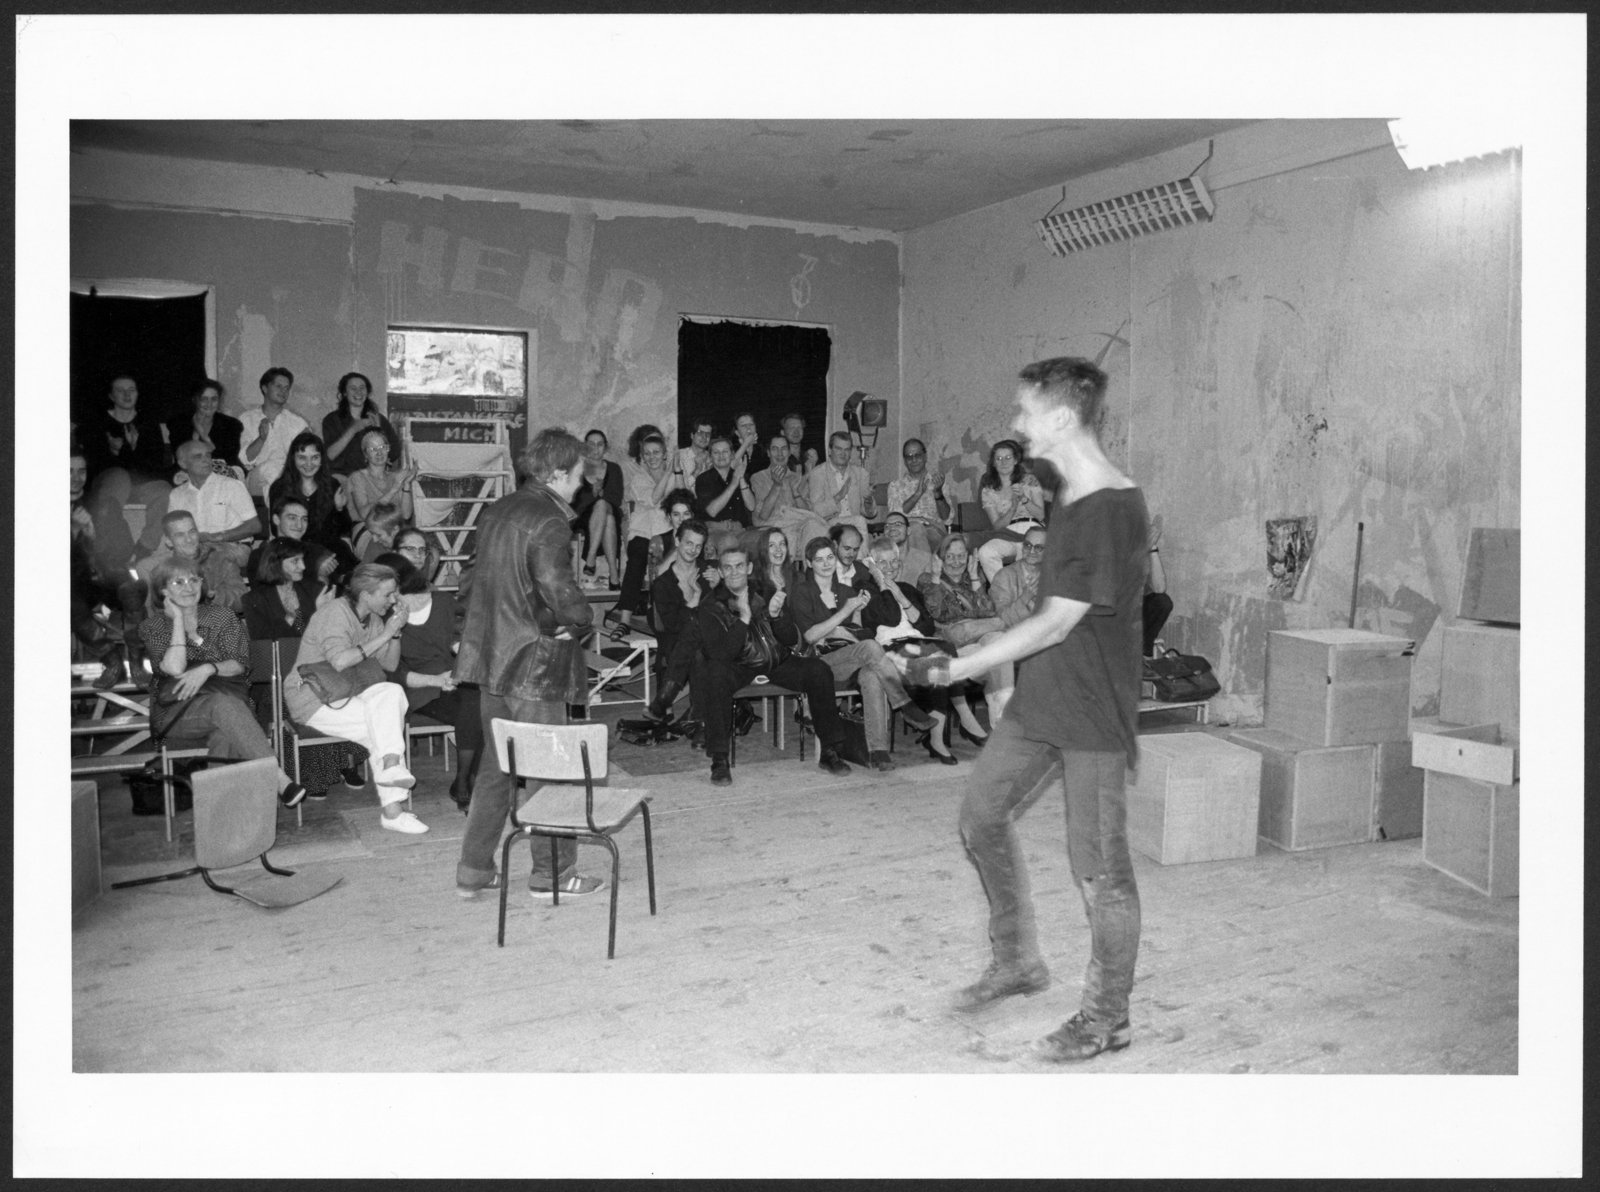 Fotografie einer Aufführung von "Klassenfeind" an der Hochschule für Schauspielkunst Ernst Busch (Hochschule für Schauspielkunst Ernst Busch Berlin RR-F)